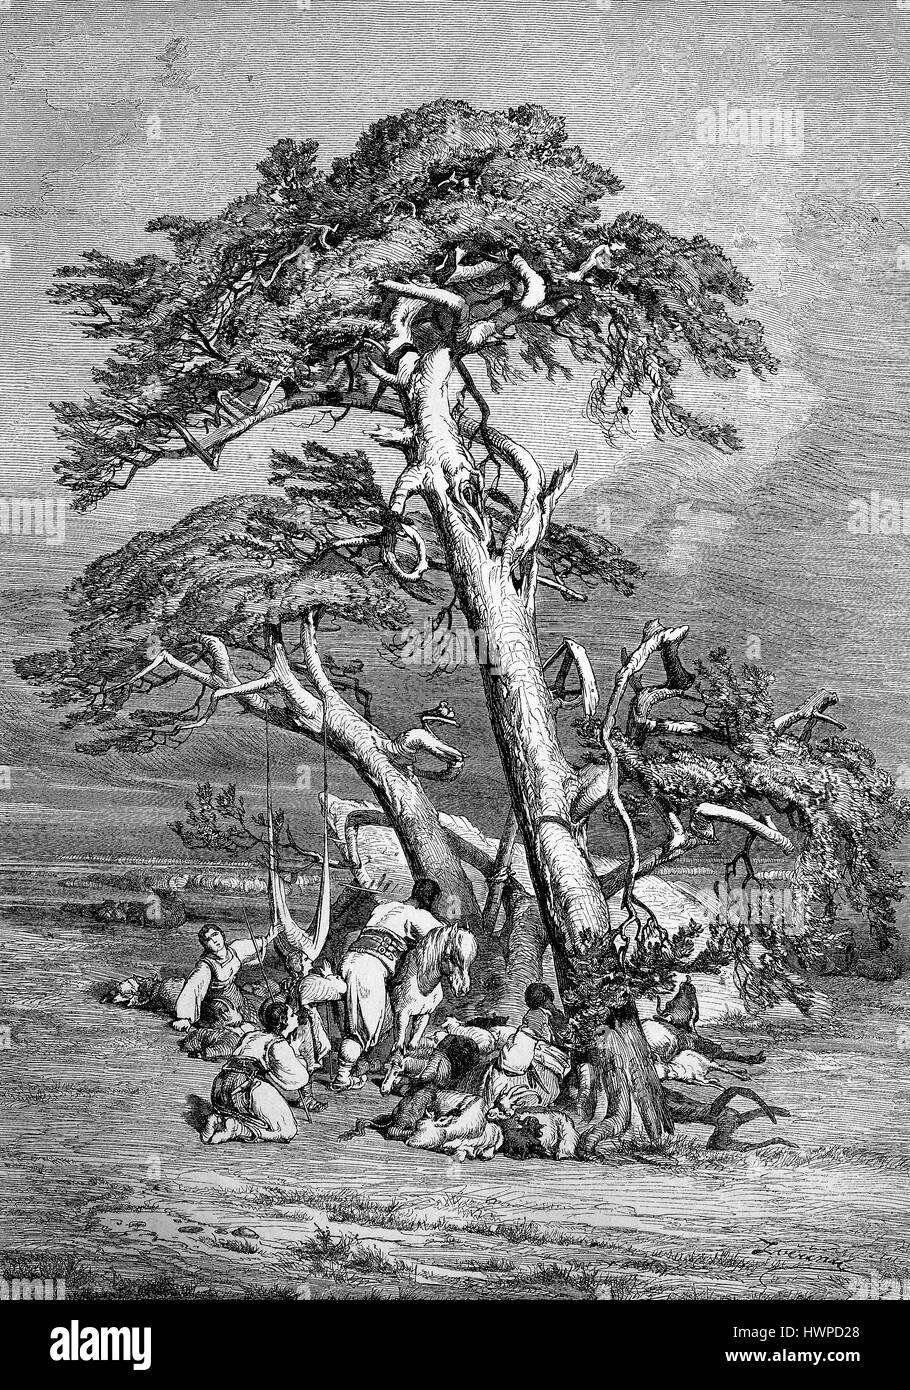 Gebet in der Steppe. Gruppenreise im Nahen Osten bei einer Rast unter einer Kiefer, Reproduktion einer original Holzschnitt aus dem Jahr 1882, digital verbessert Stockfoto